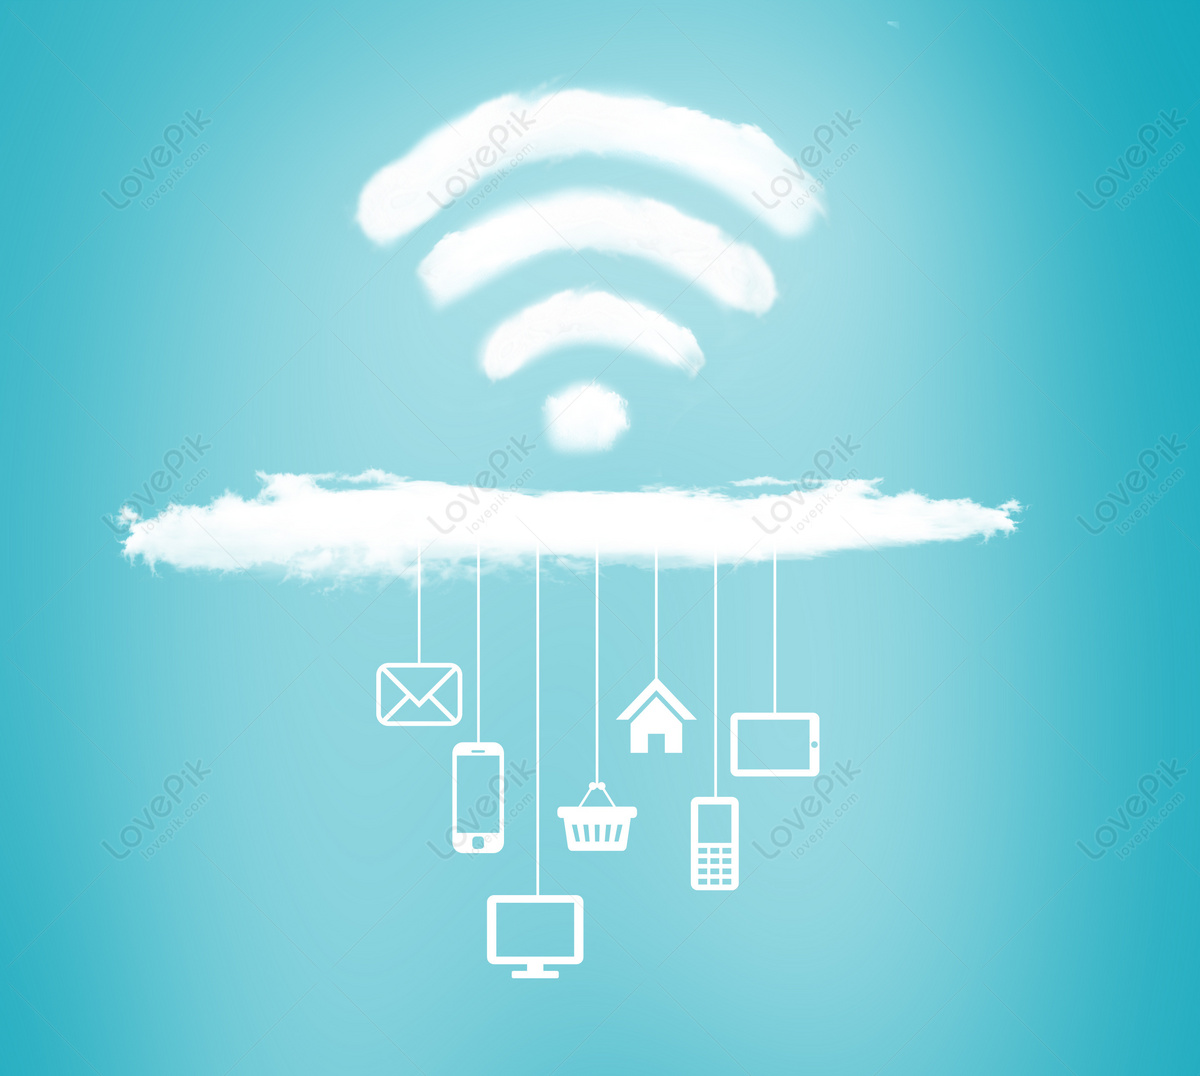 Ý Tưởng Nền Công Nghệ Wifi: Với ý tưởng nền công nghệ Wifi độc đáo, bạn có thể giúp đỡ việc kết nối và truyền tải dữ liệu được nhanh chóng hơn. Hình ảnh liên quan đến ý tưởng này sẽ giúp bạn hiểu rõ hơn và nhanh chóng phát triển kỹ năng của mình.